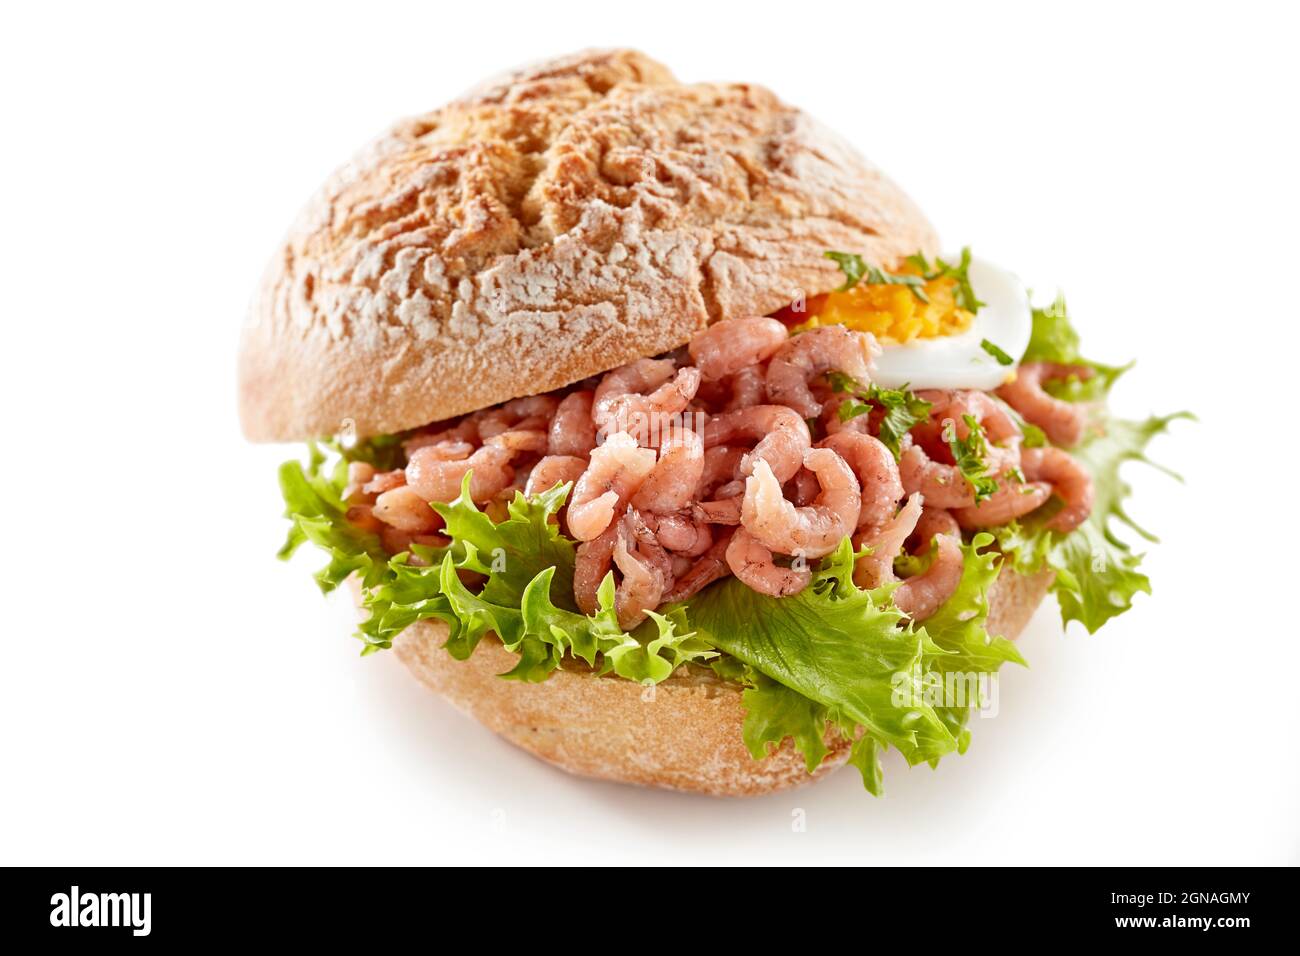 Alto angolo di delizioso panino con gamberi e lattuga posti sul tavolo bianco in studio Foto Stock